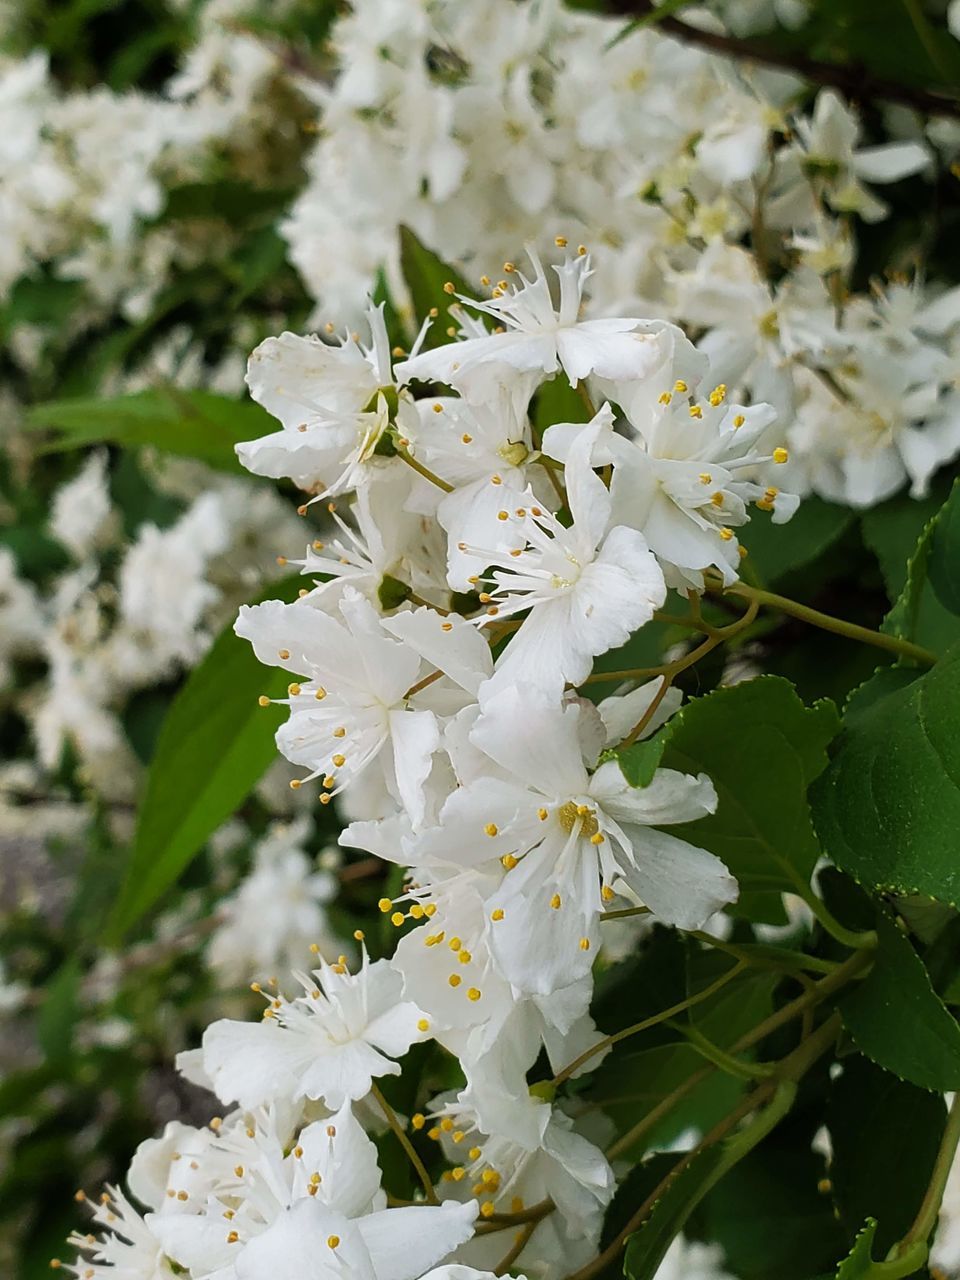 CLOSE-UP OF WHITE CHERRY BLOSSOM PLANT